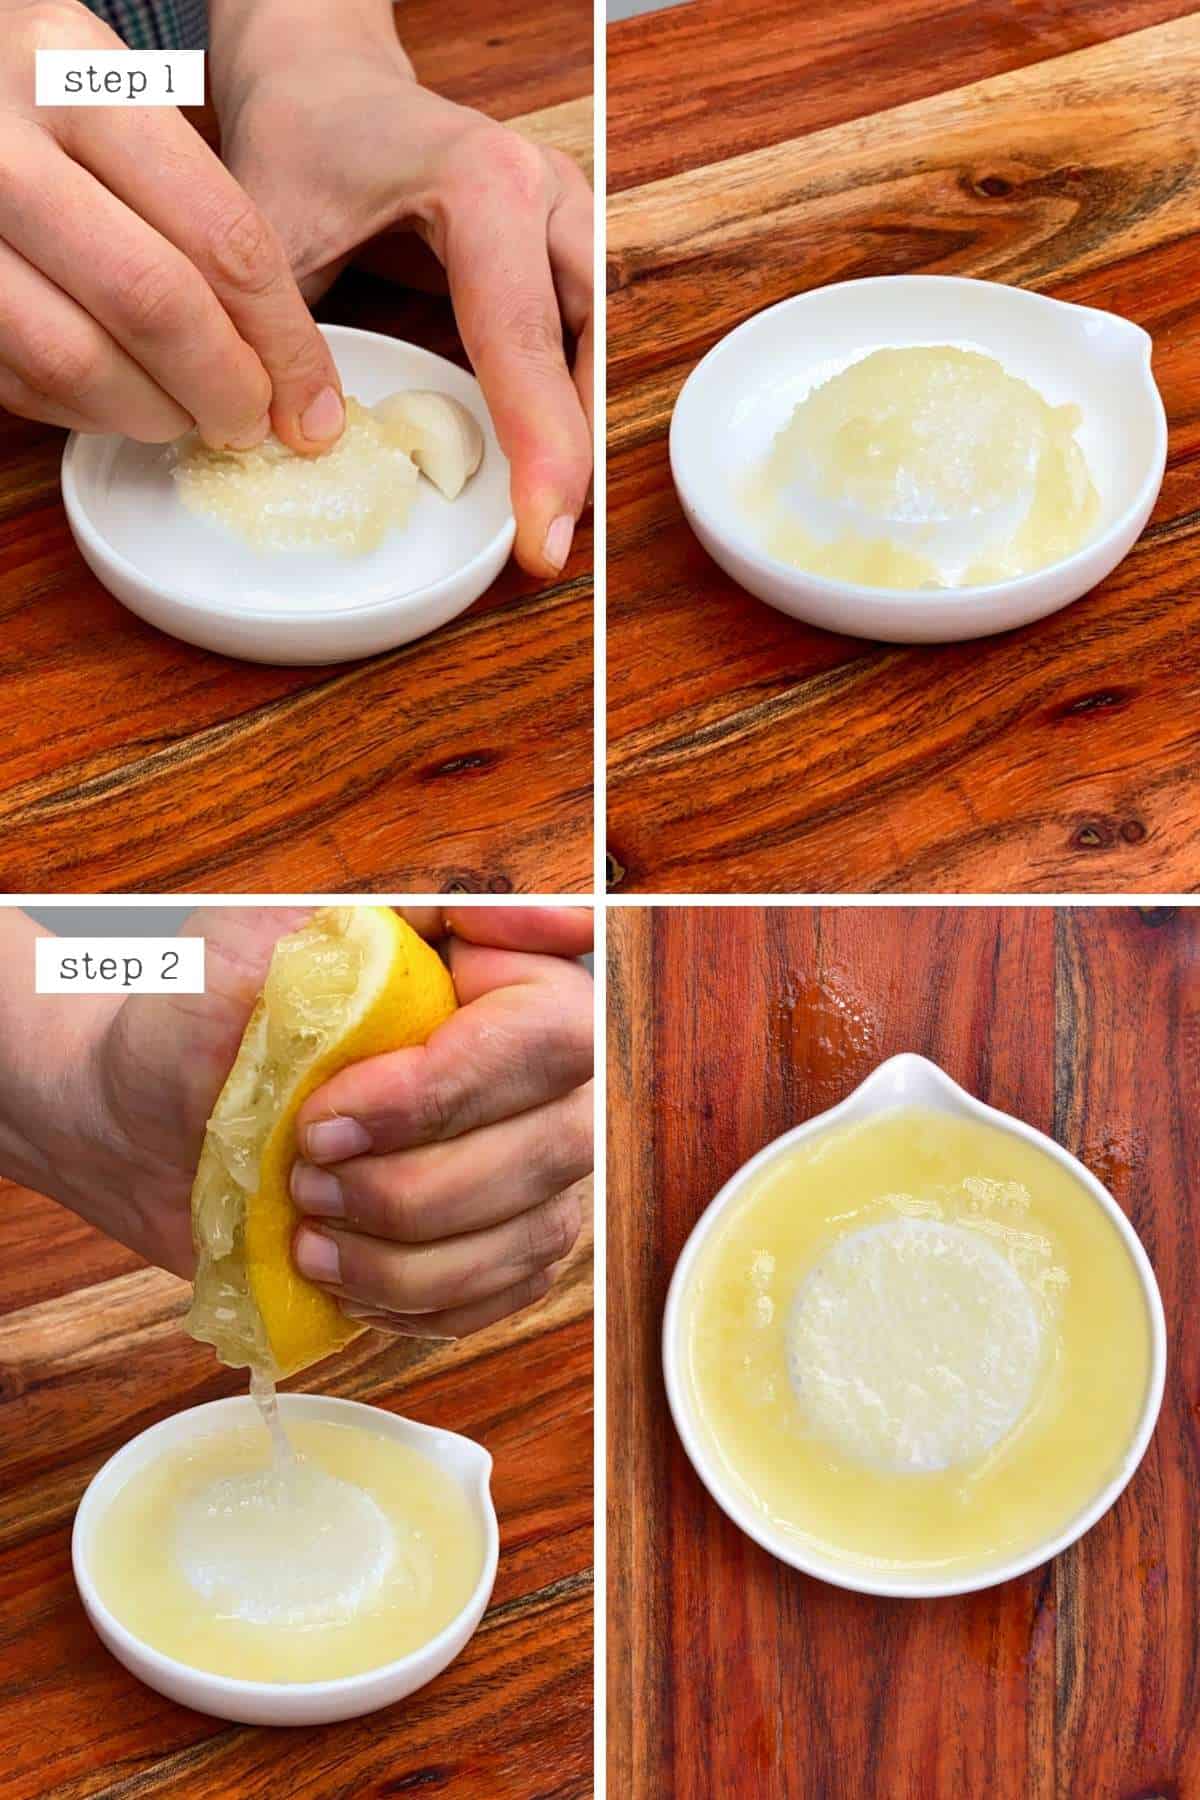 Preparing garlic and lemon juice